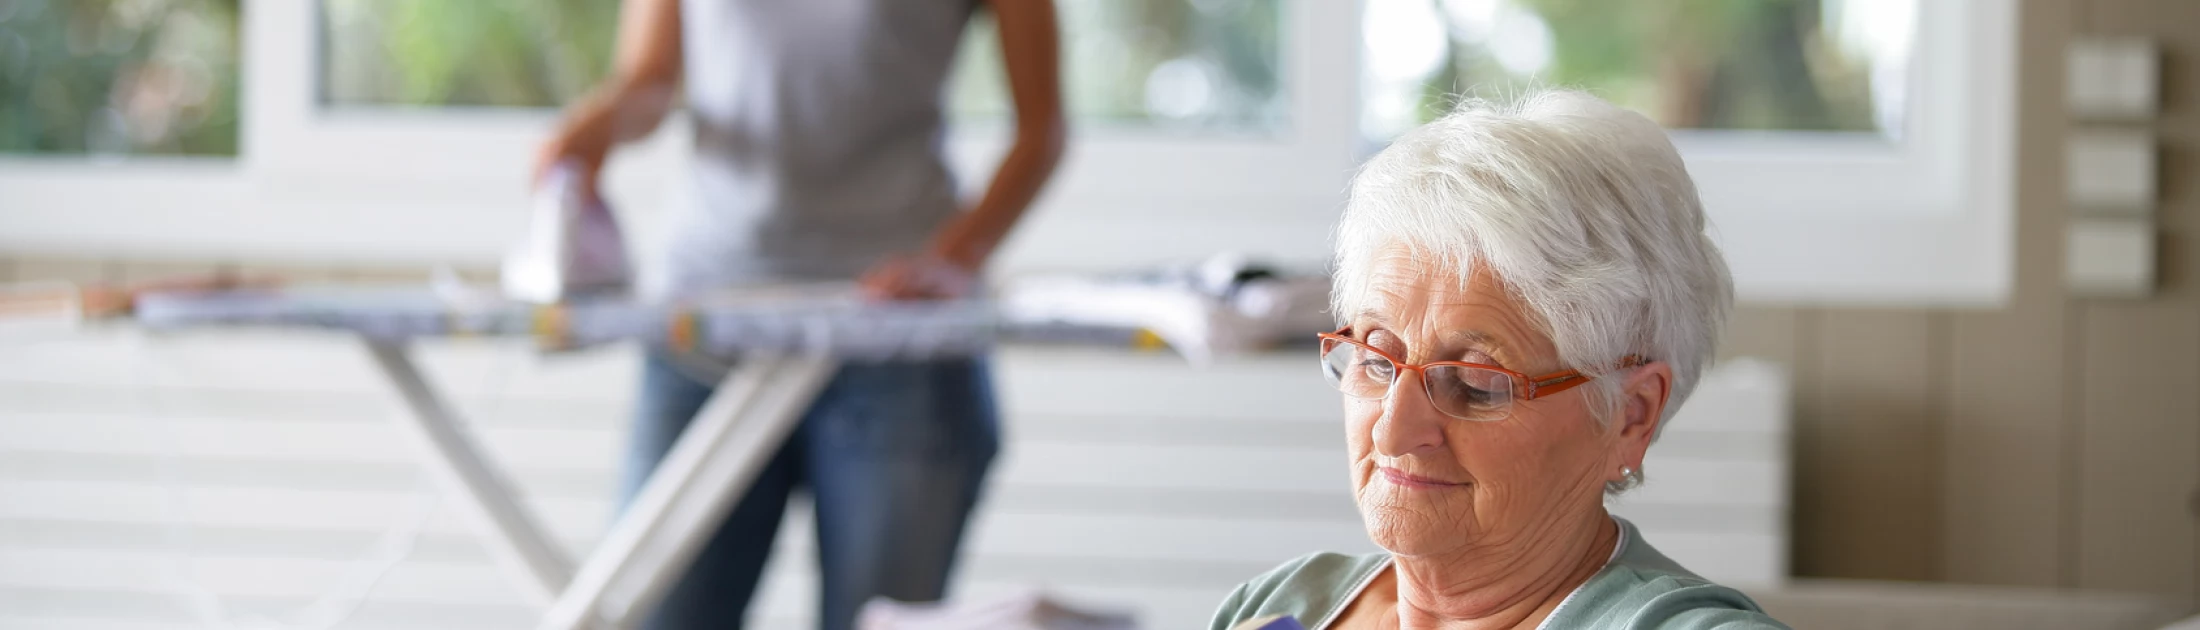 Aide ménagère pour personnes âgées actives, fragiles ou dépendantes